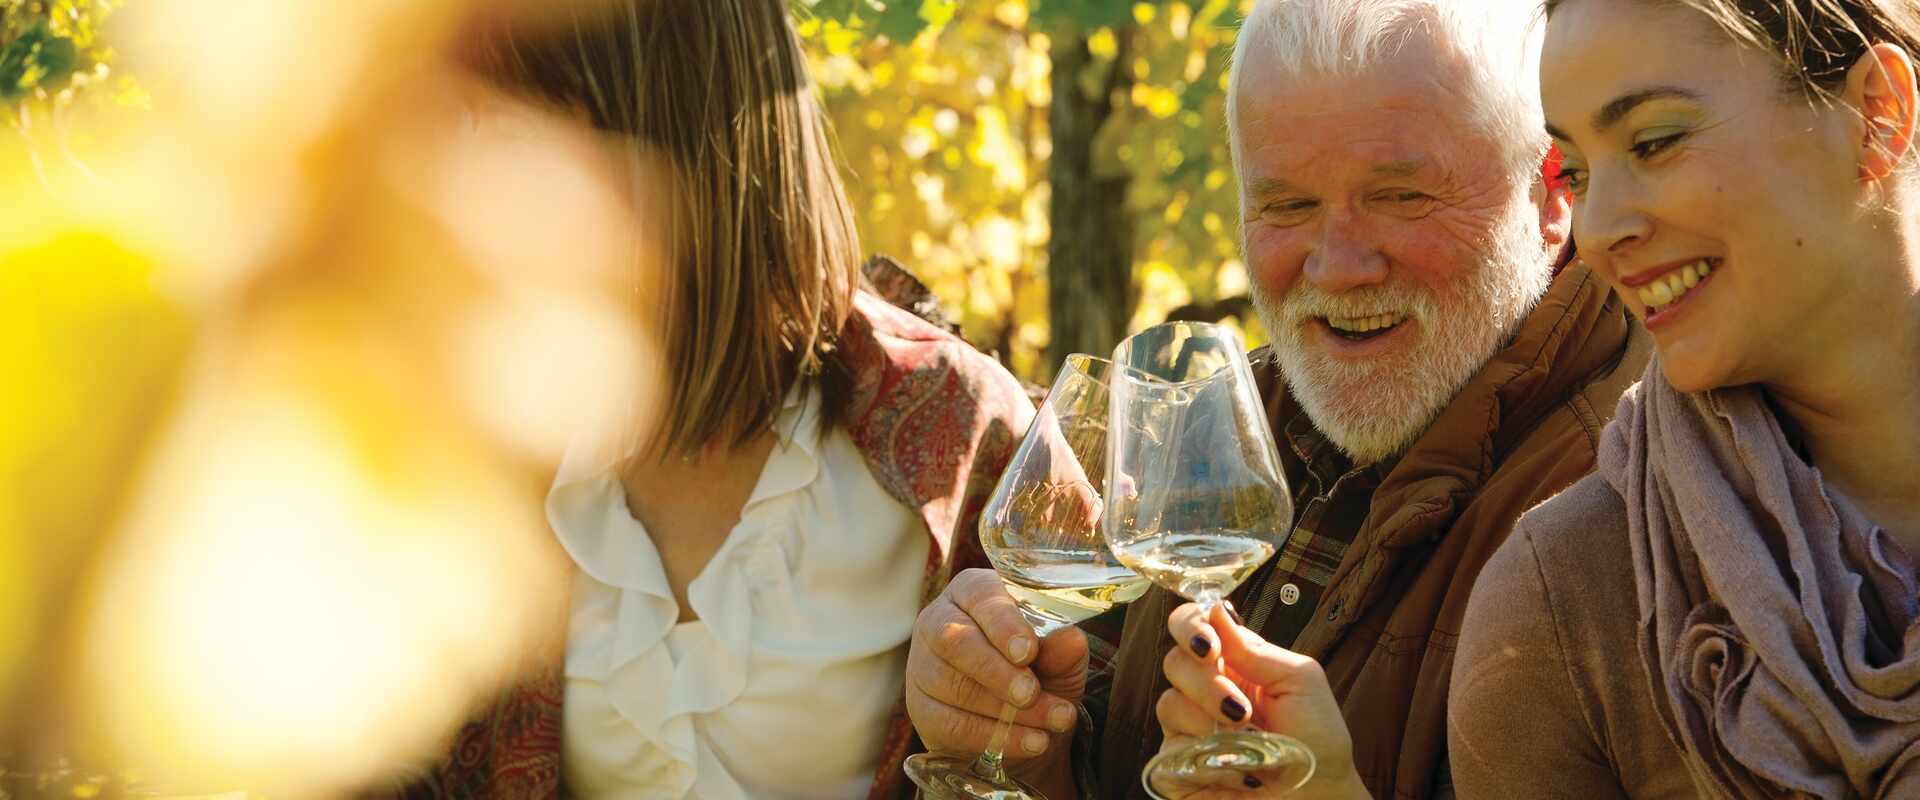 generic people tasting wine in a sunlit vineyard